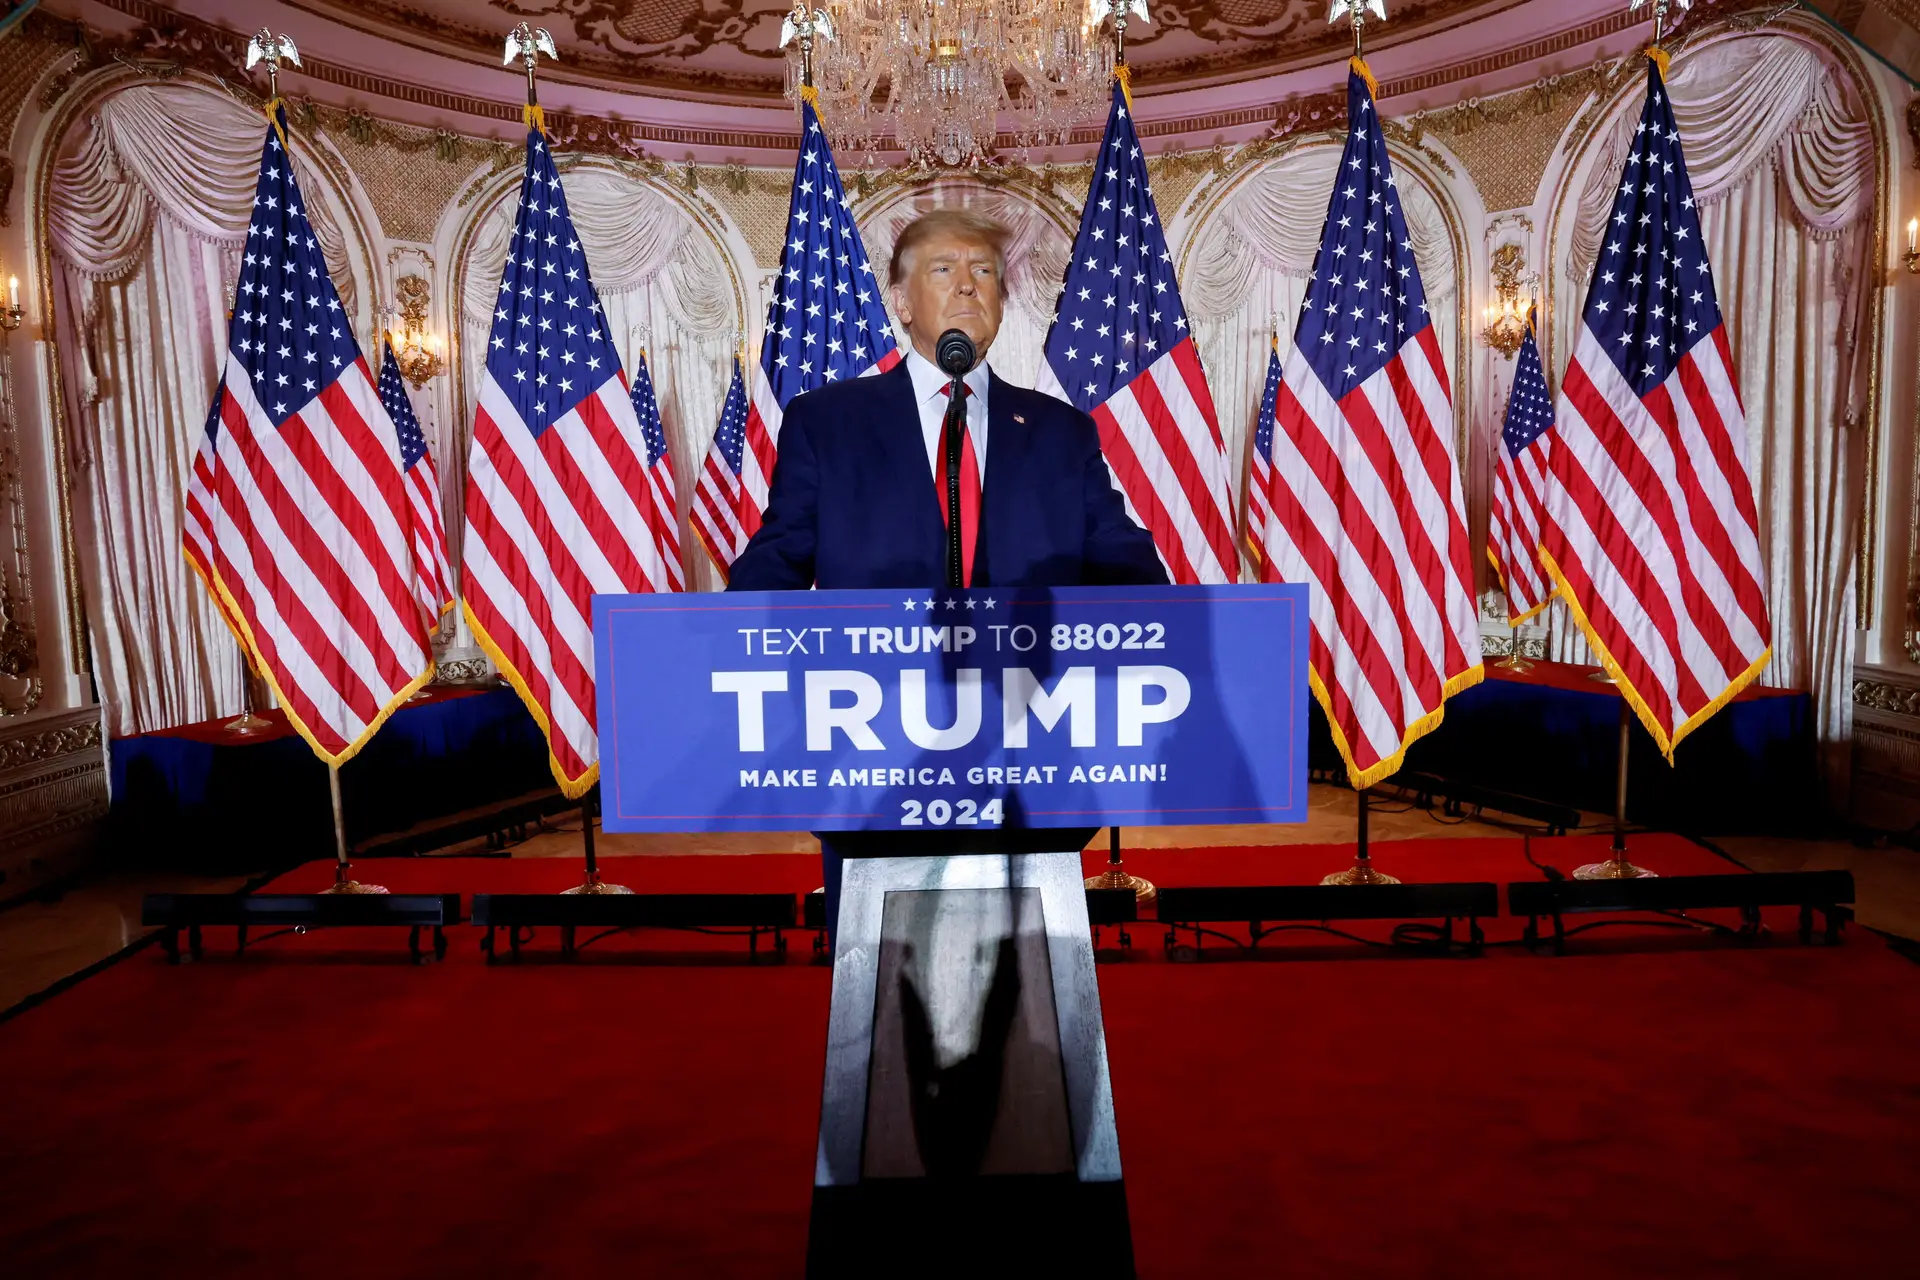 REGRESSO. Donald Trump quer voltar à Casa Branca. No seu ‘resort’ de Mar-a-Lago, anunciou que irá disputar as primárias republicanas